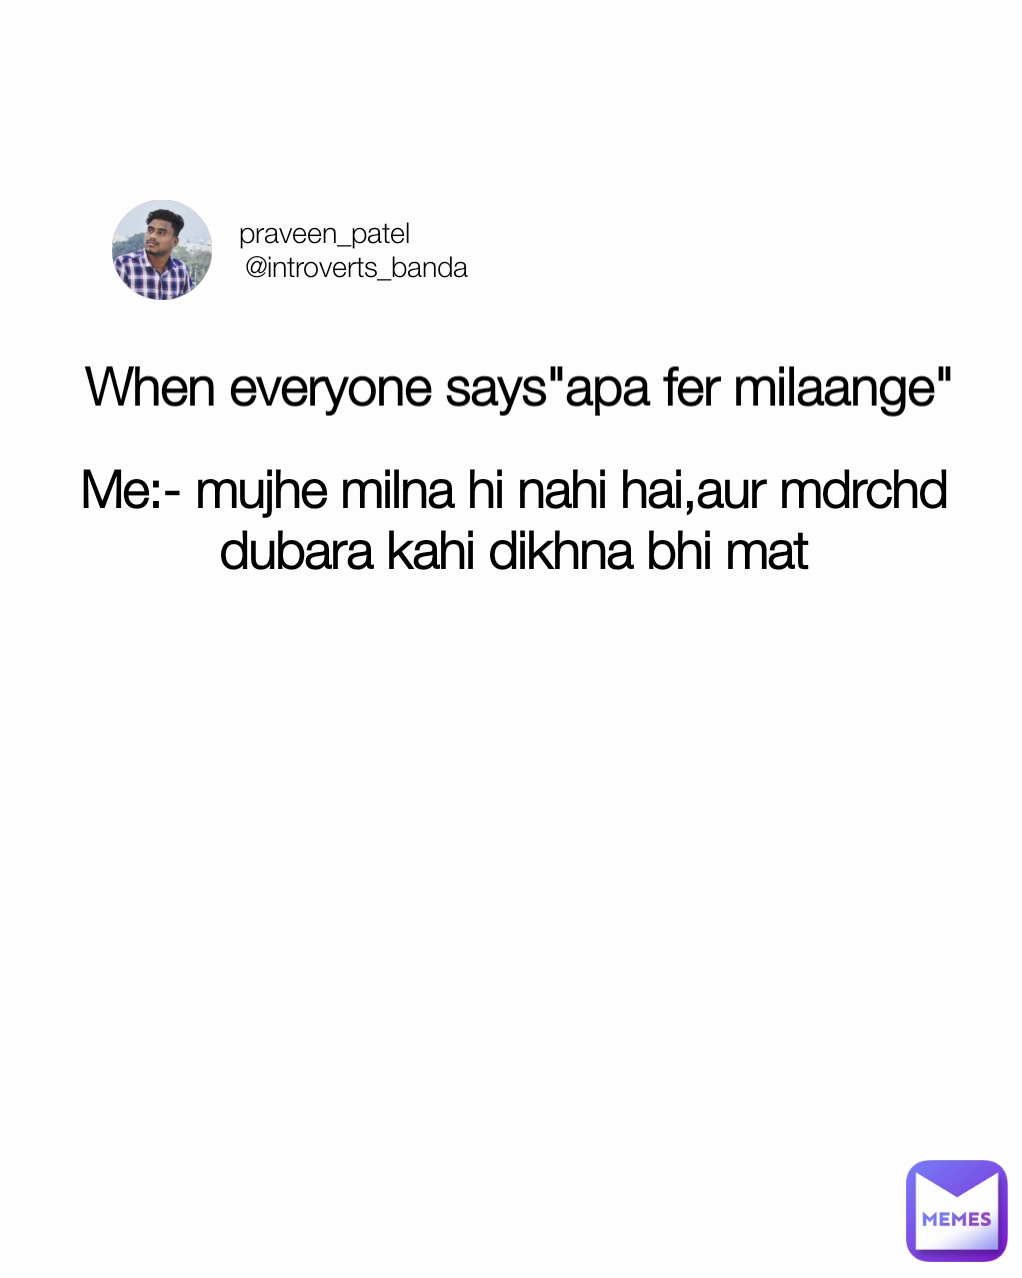 Me:- mujhe milna hi nahi hai,aur mdrchd dubara kahi dikhna bhi mat praveen_patel
        @introverts_banda When everyone says"apa fer milaange"